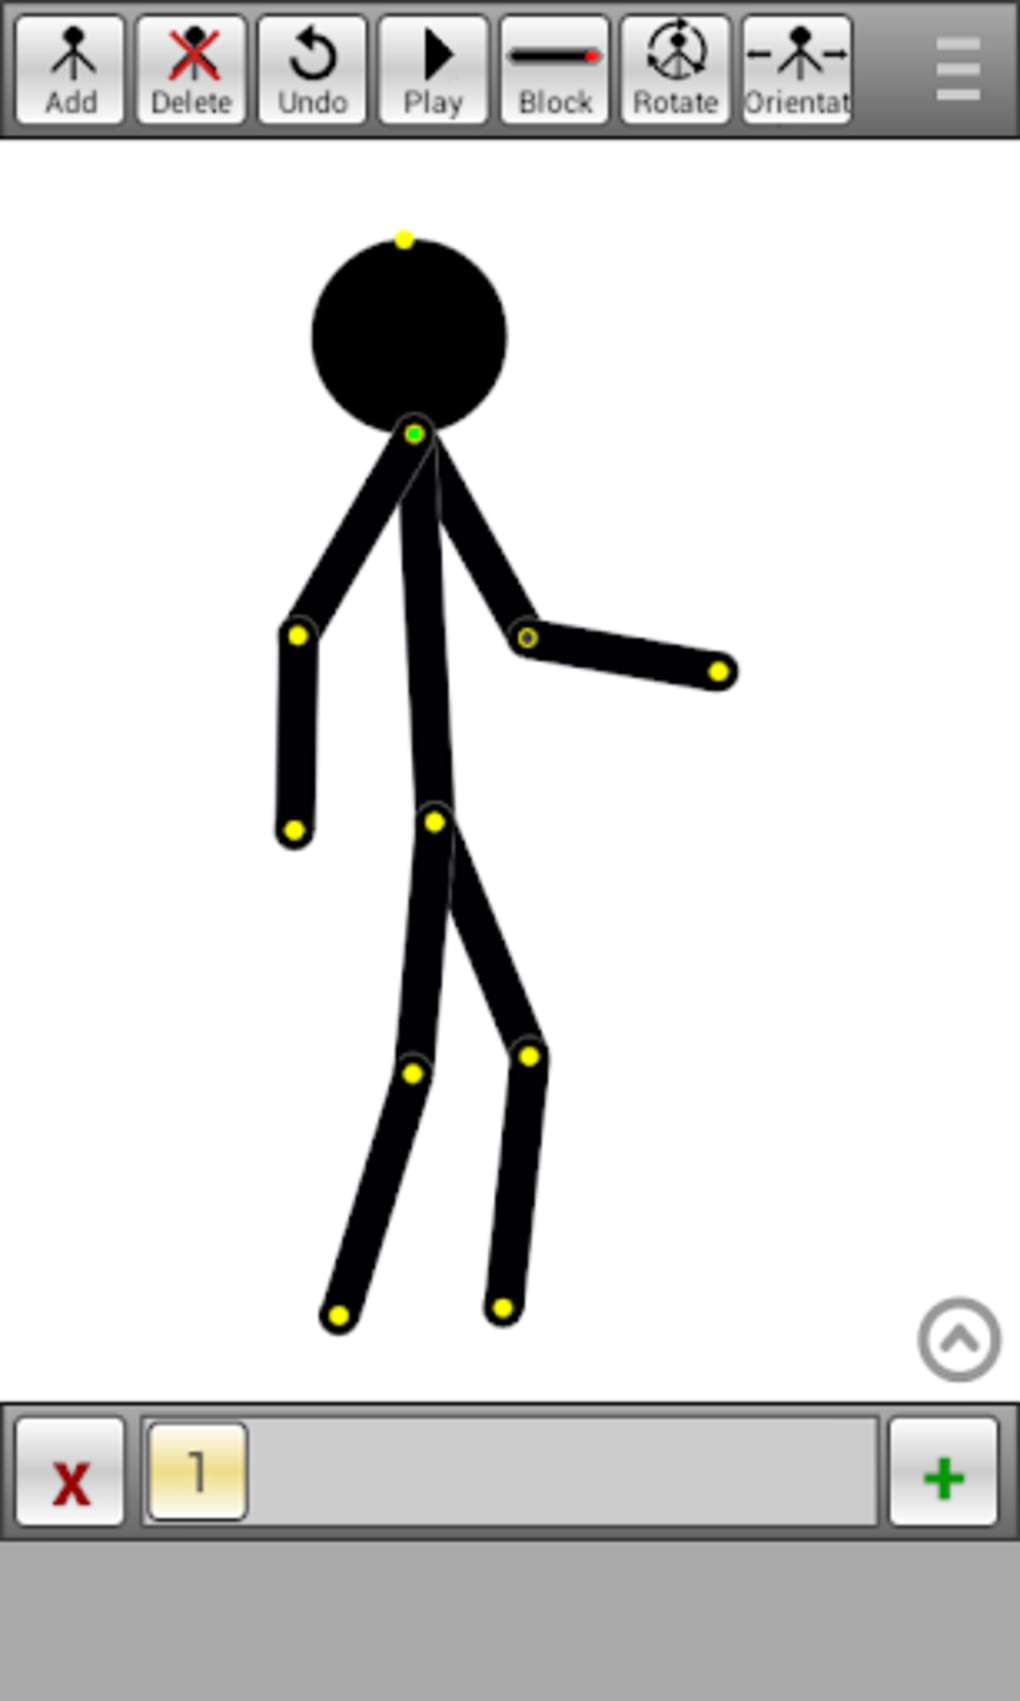 stick figure animator 3.0